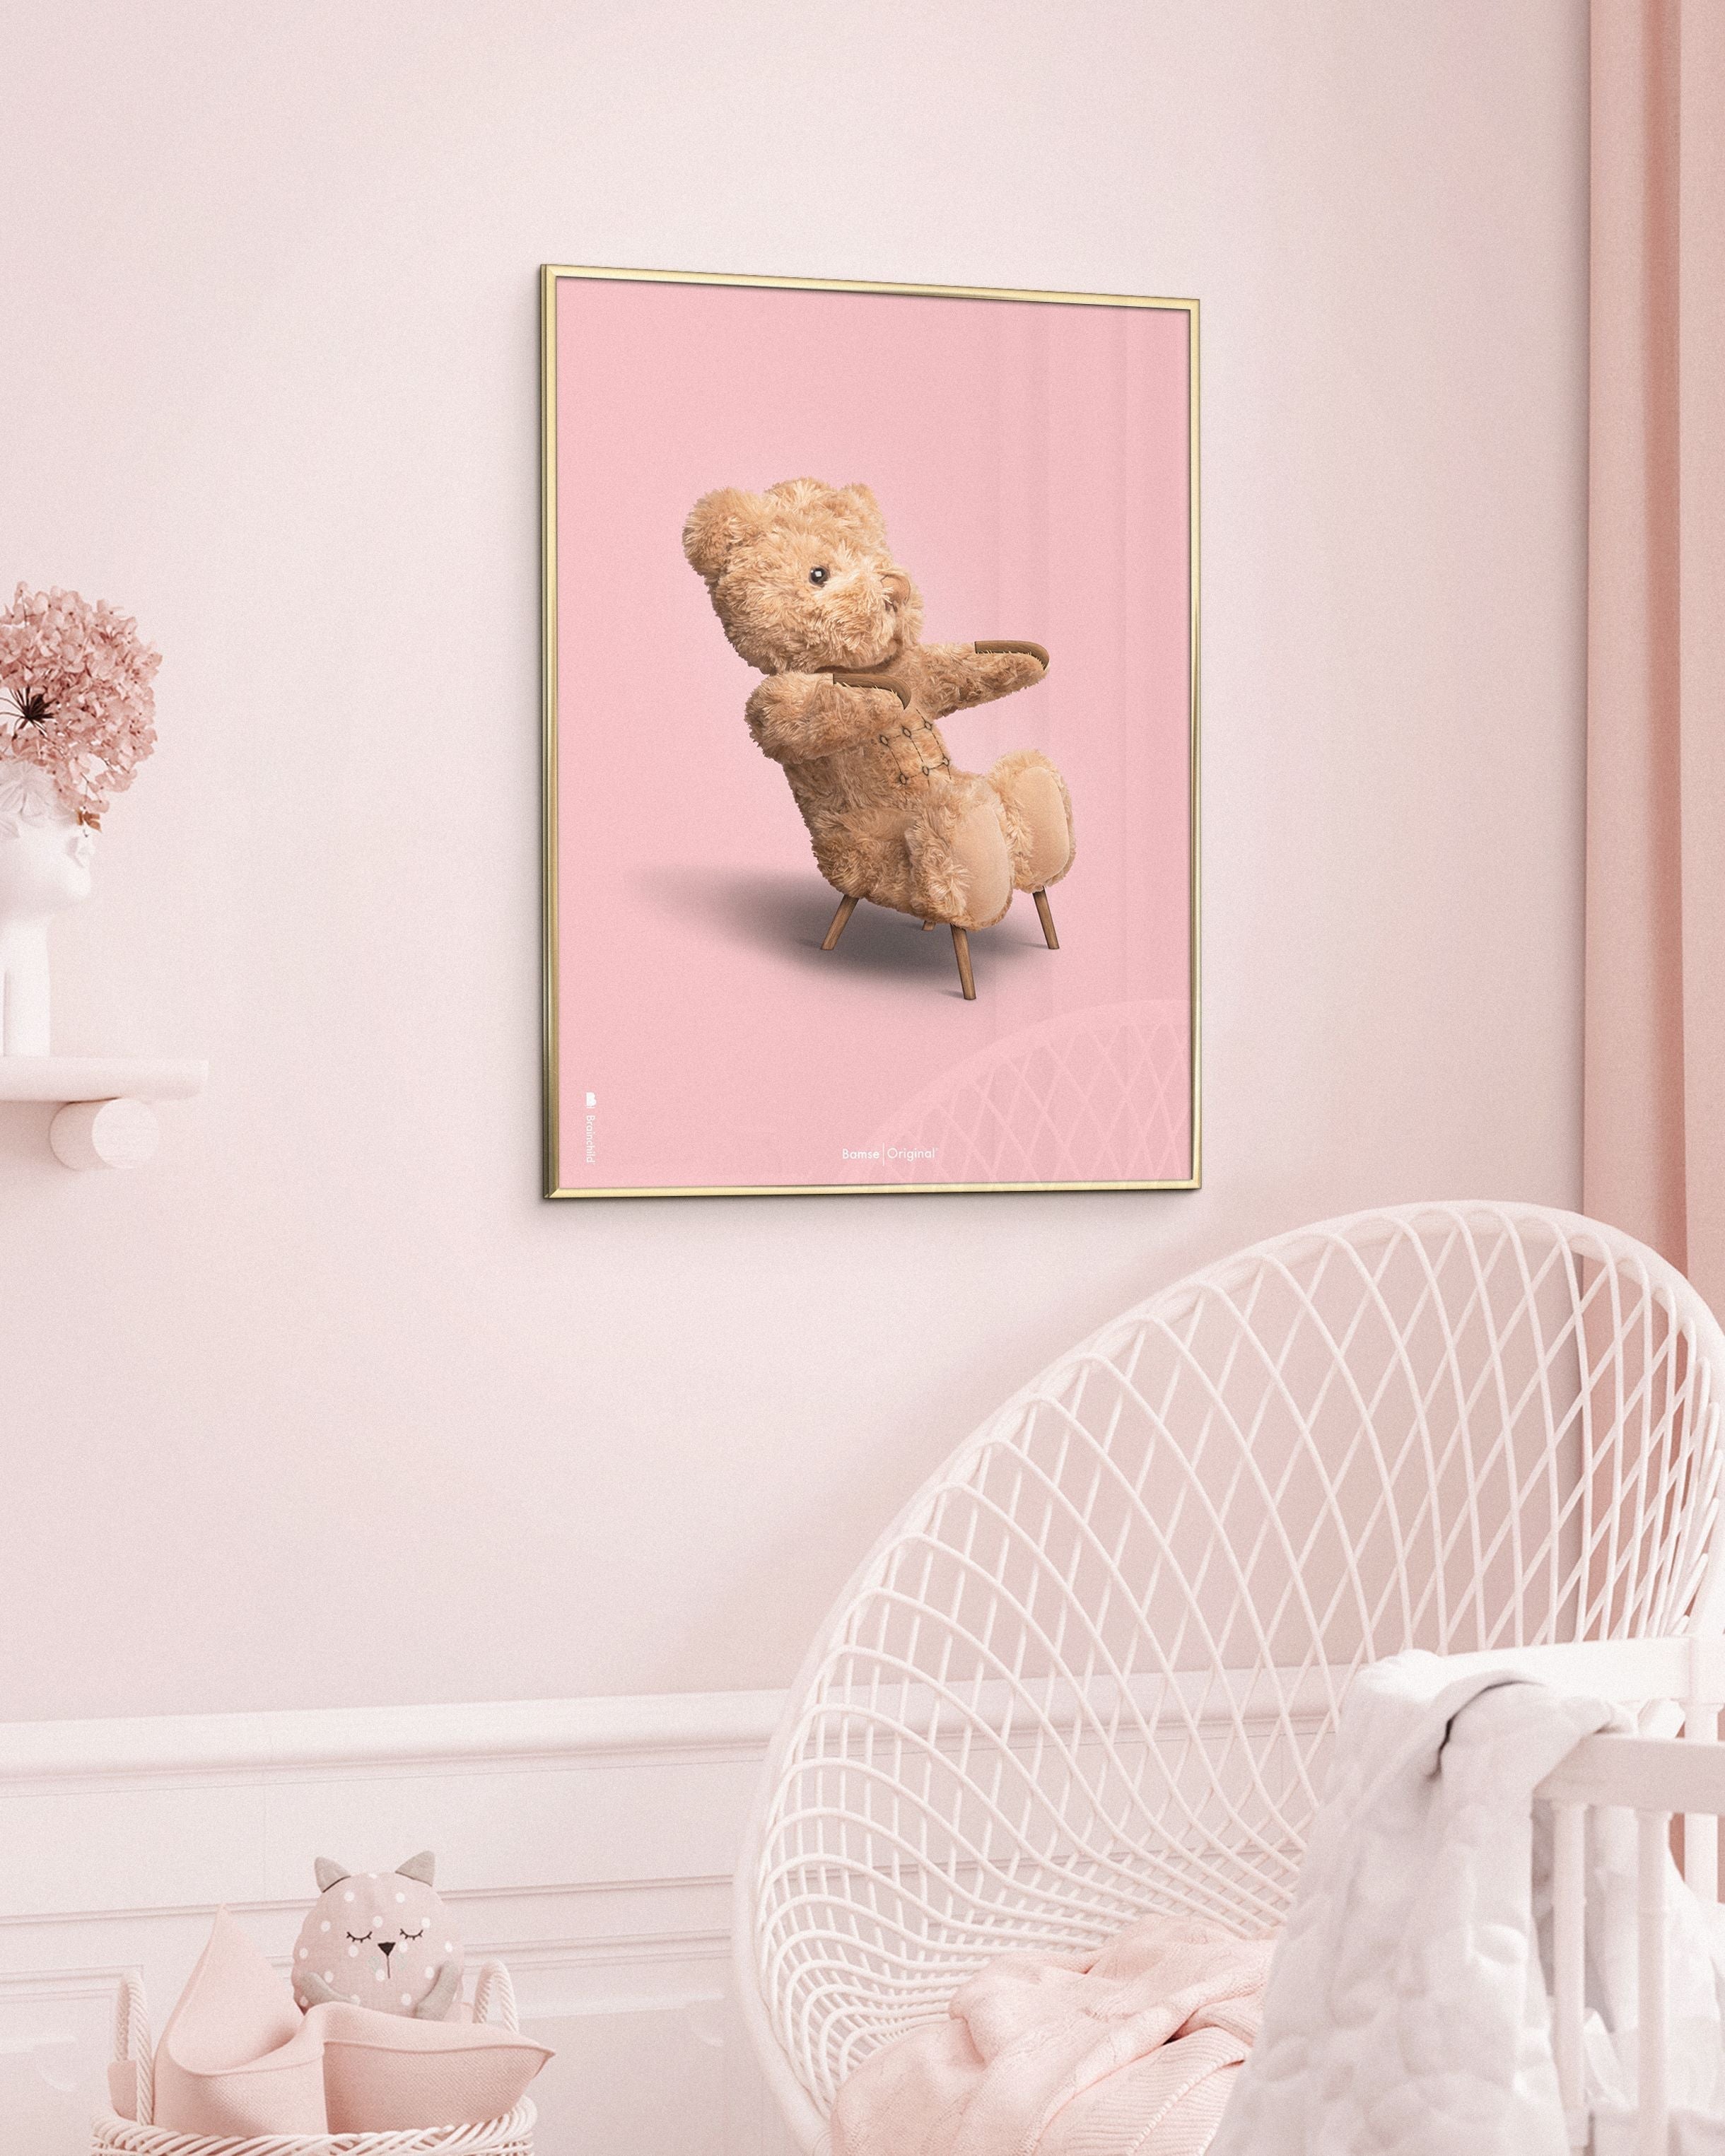 Marco de póster clásico de BrainChild Teddy Bear hecho de madera oscura Ram 30x40 cm, fondo rosa